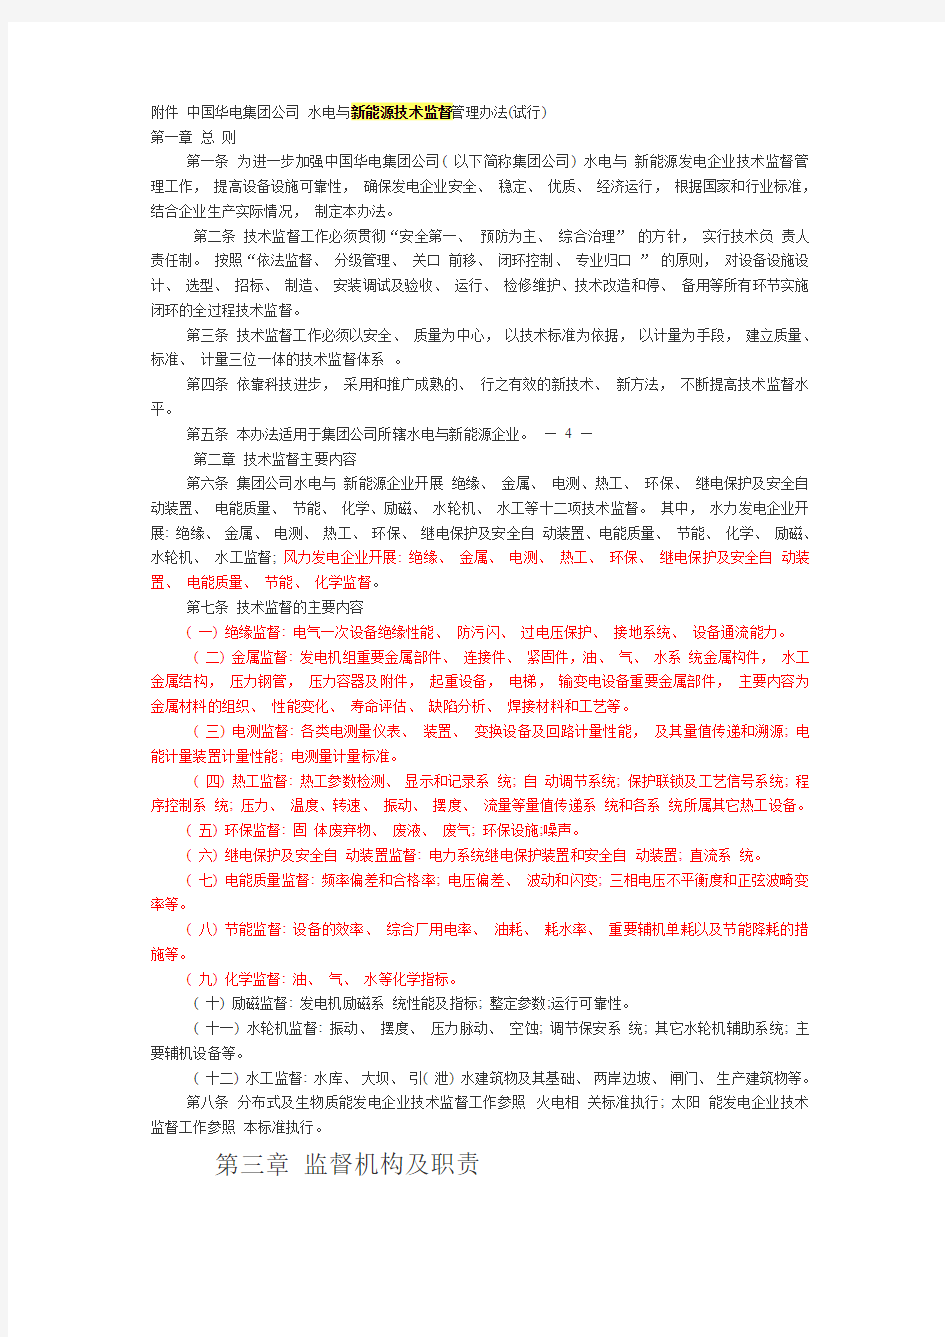 中国华电集团公司水电与新能源技术监督管理办法